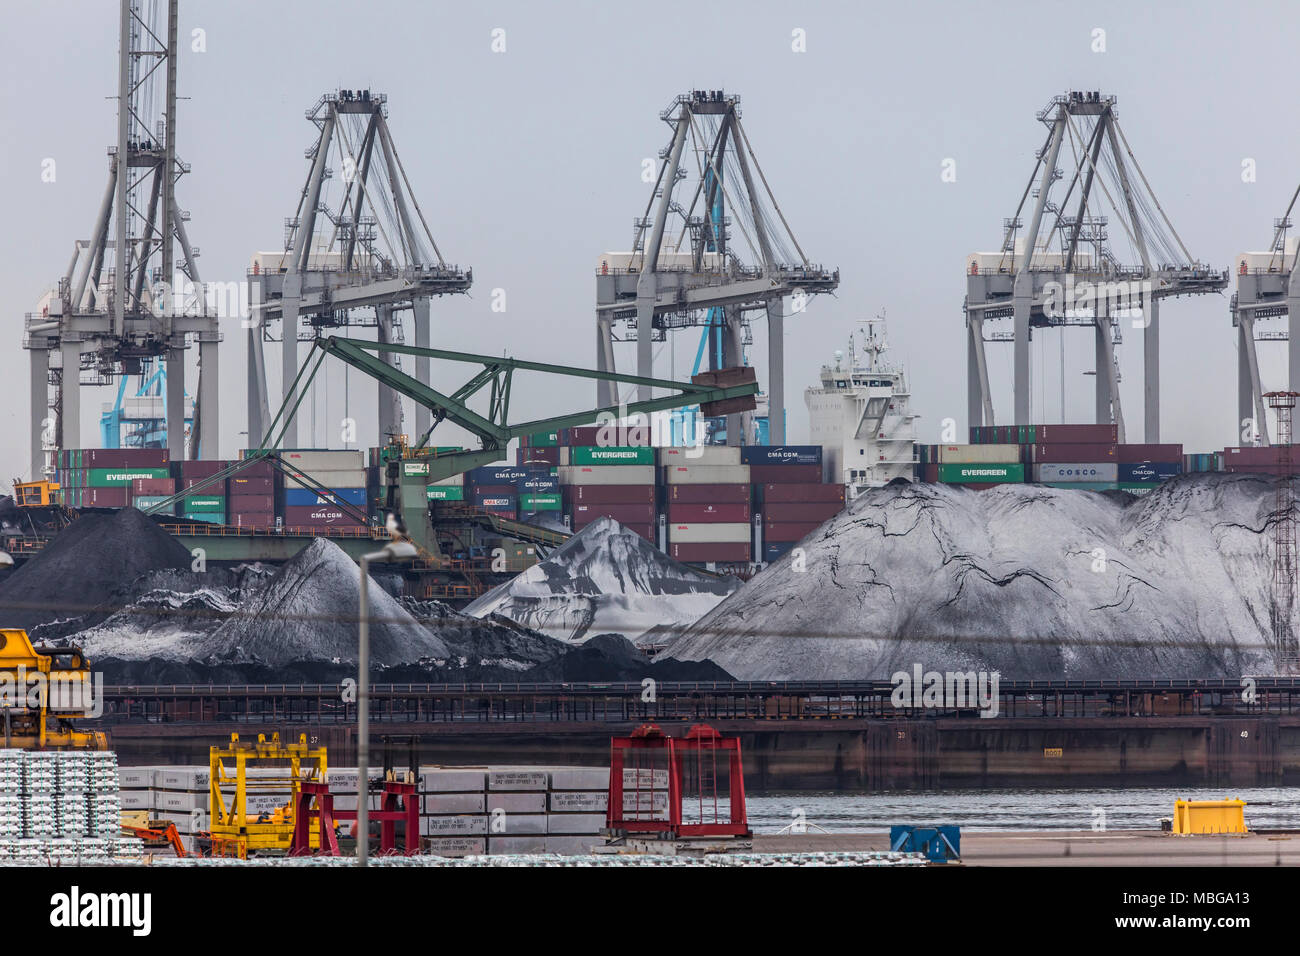 Der Hafen von Rotterdam, Niederlande, Deep-sea port Maasvlakte 2, auf einer künstlich geschaffenen Land Bereich vor der ursprünglichen Küste, Hafen, für Stockfoto